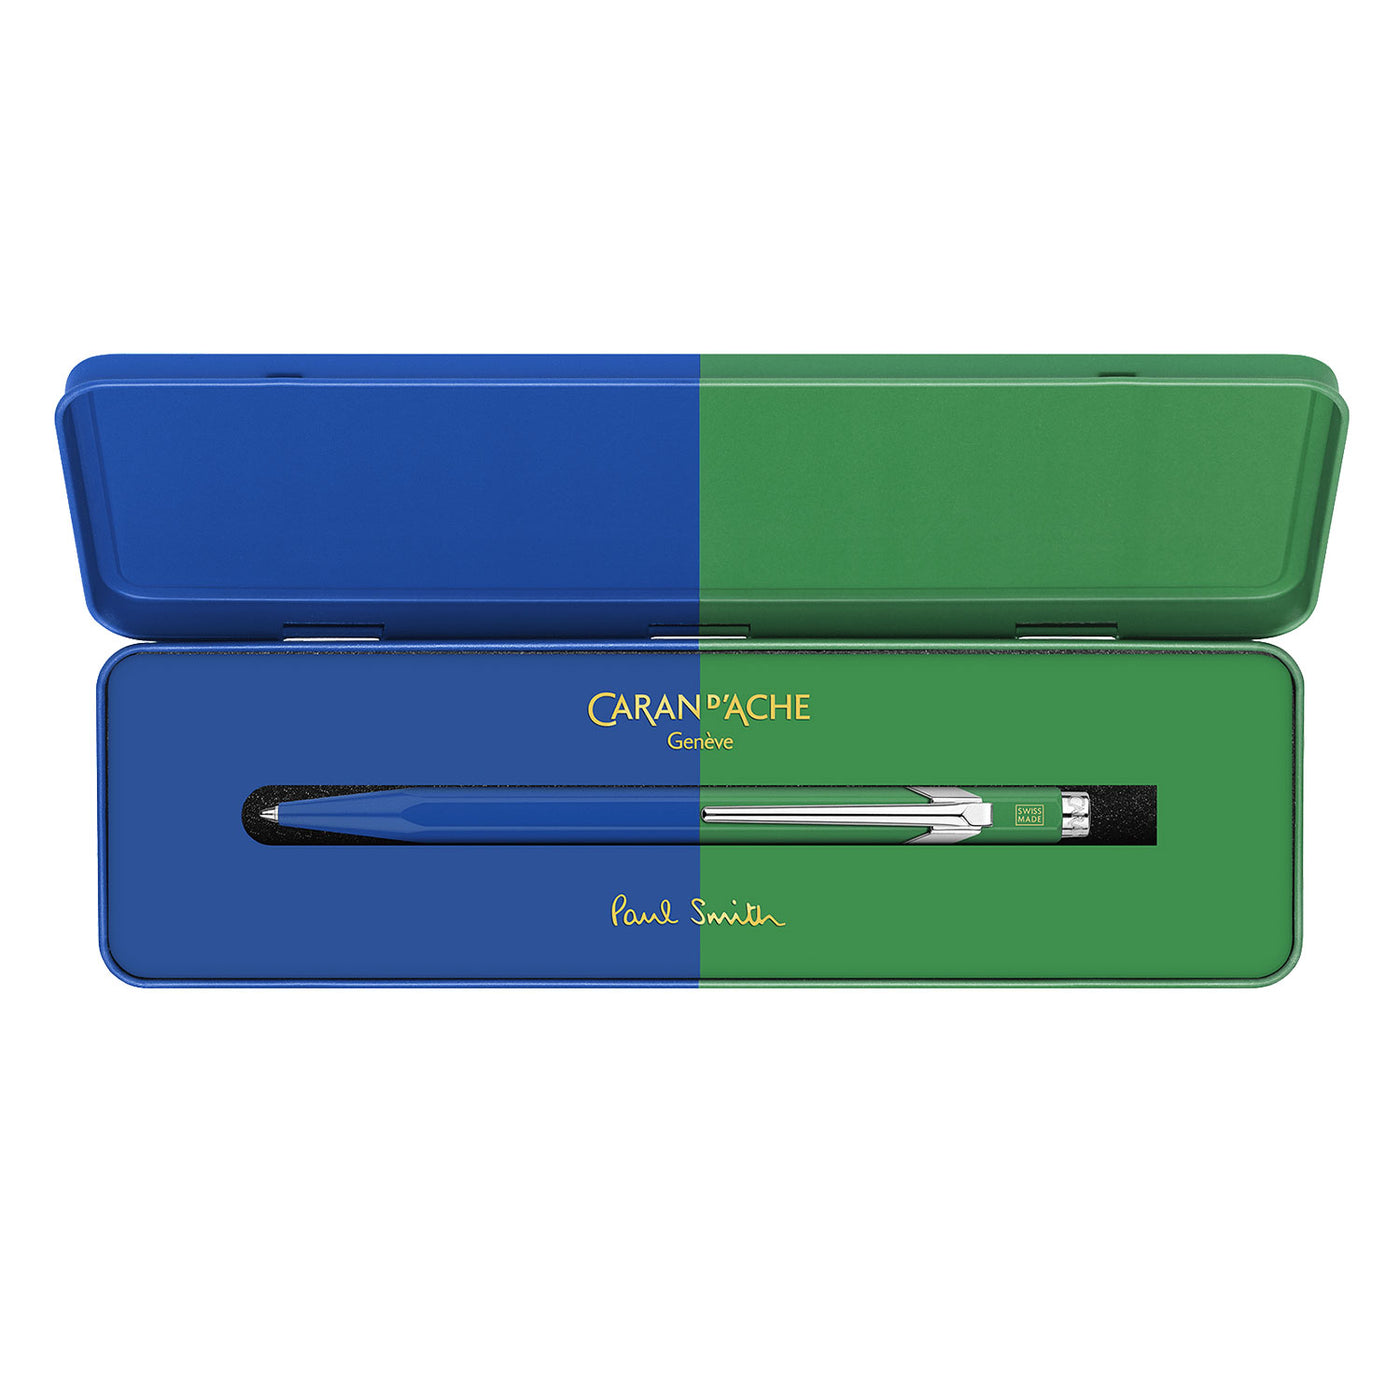 Caran d'Ache 849 Paul Smith Ball Pen - Cobalt Blue & Emerald Green (Limited Edition) 5